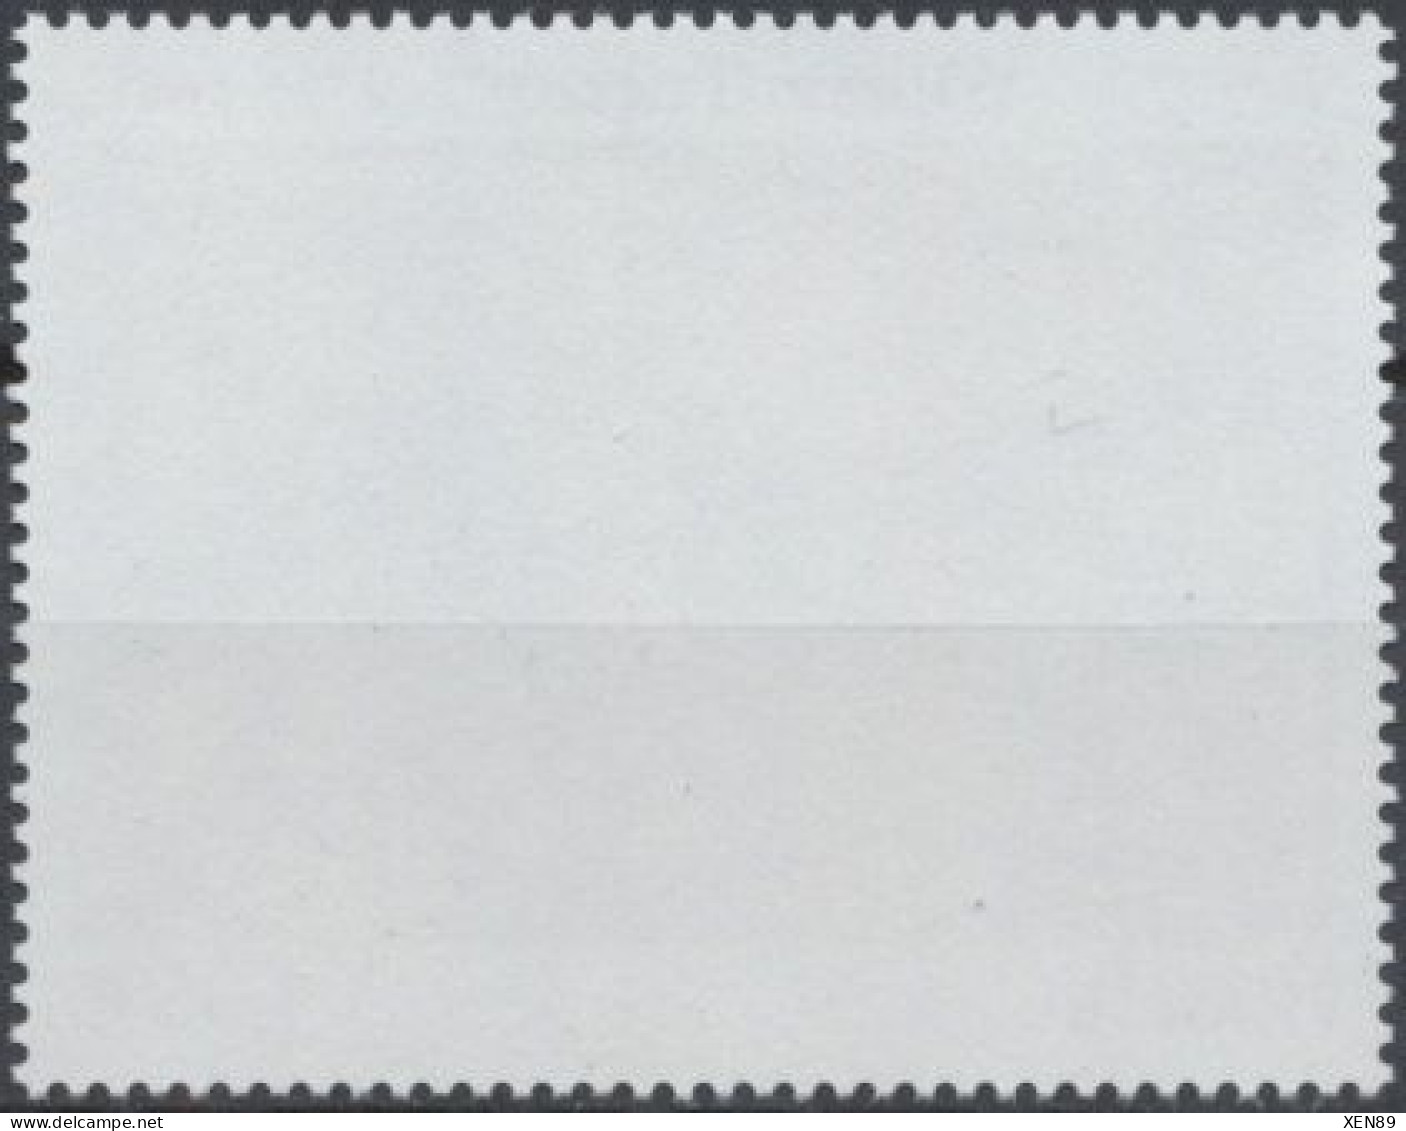 2010 - 4438 - Série Artistique - William Turner, Peintre Britannique - Unused Stamps